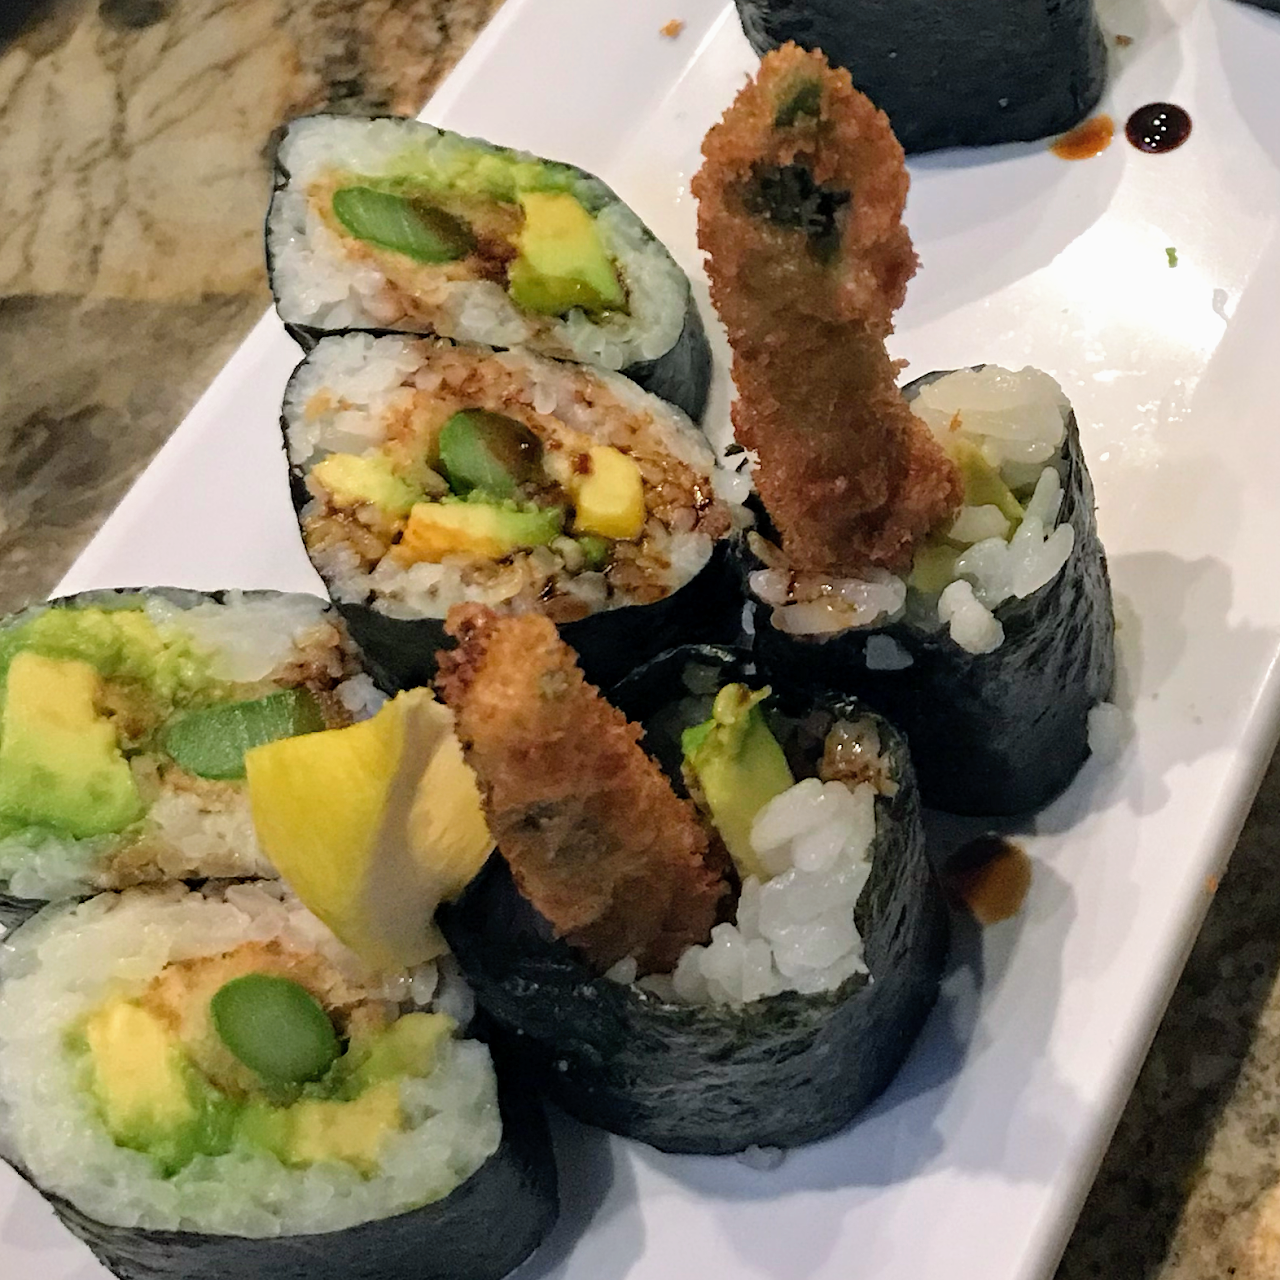 Naka Sushi Authentic Japanese Cuisine